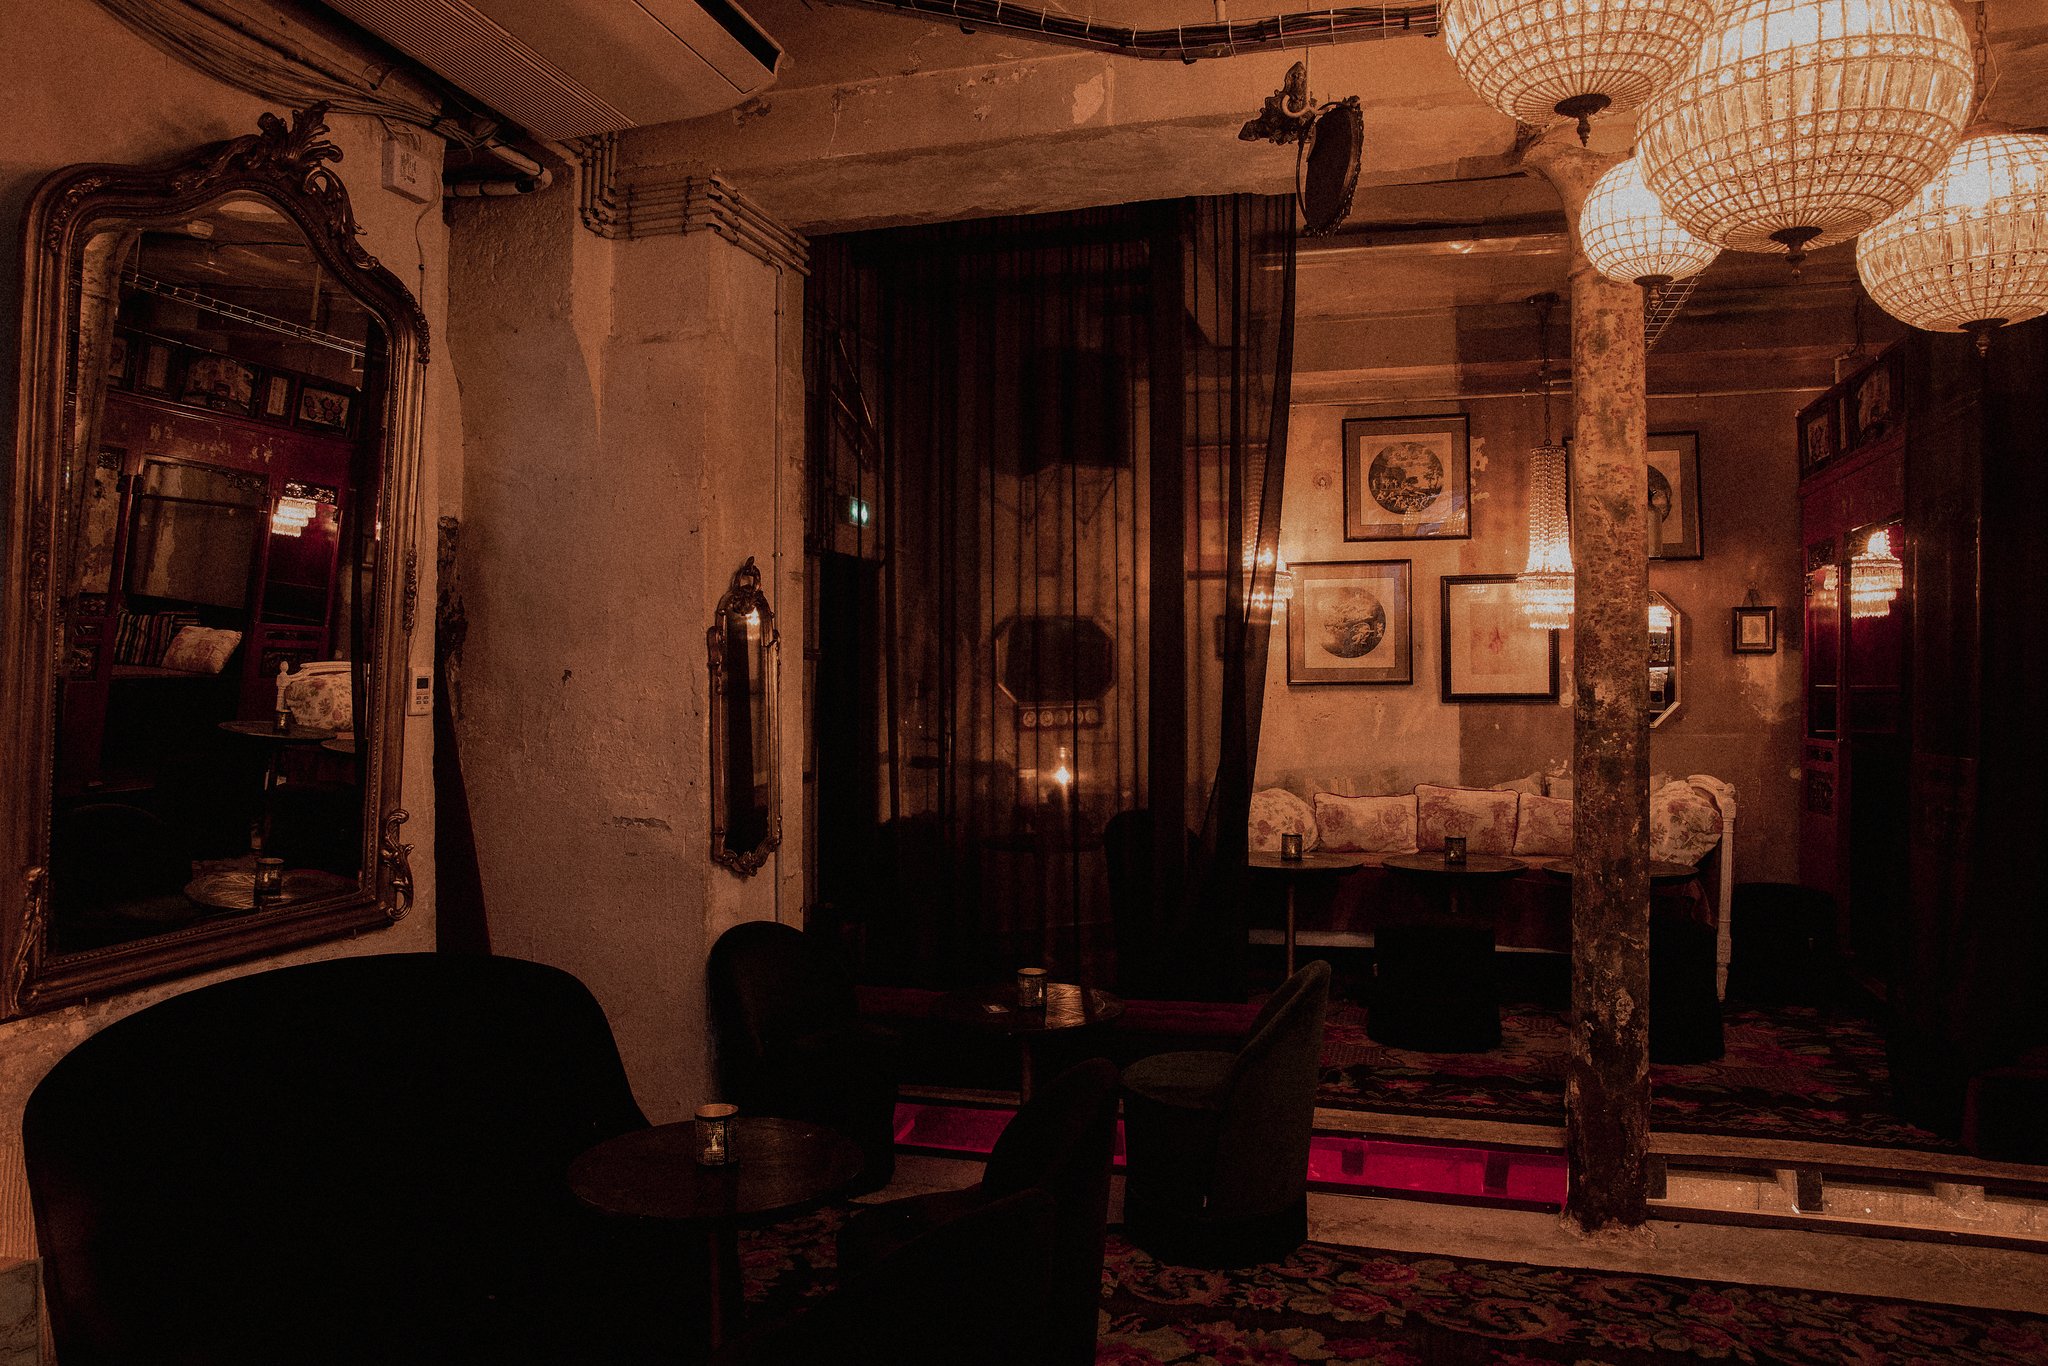 Les Hôtels de Paris - 酒吧 - 戒毒所